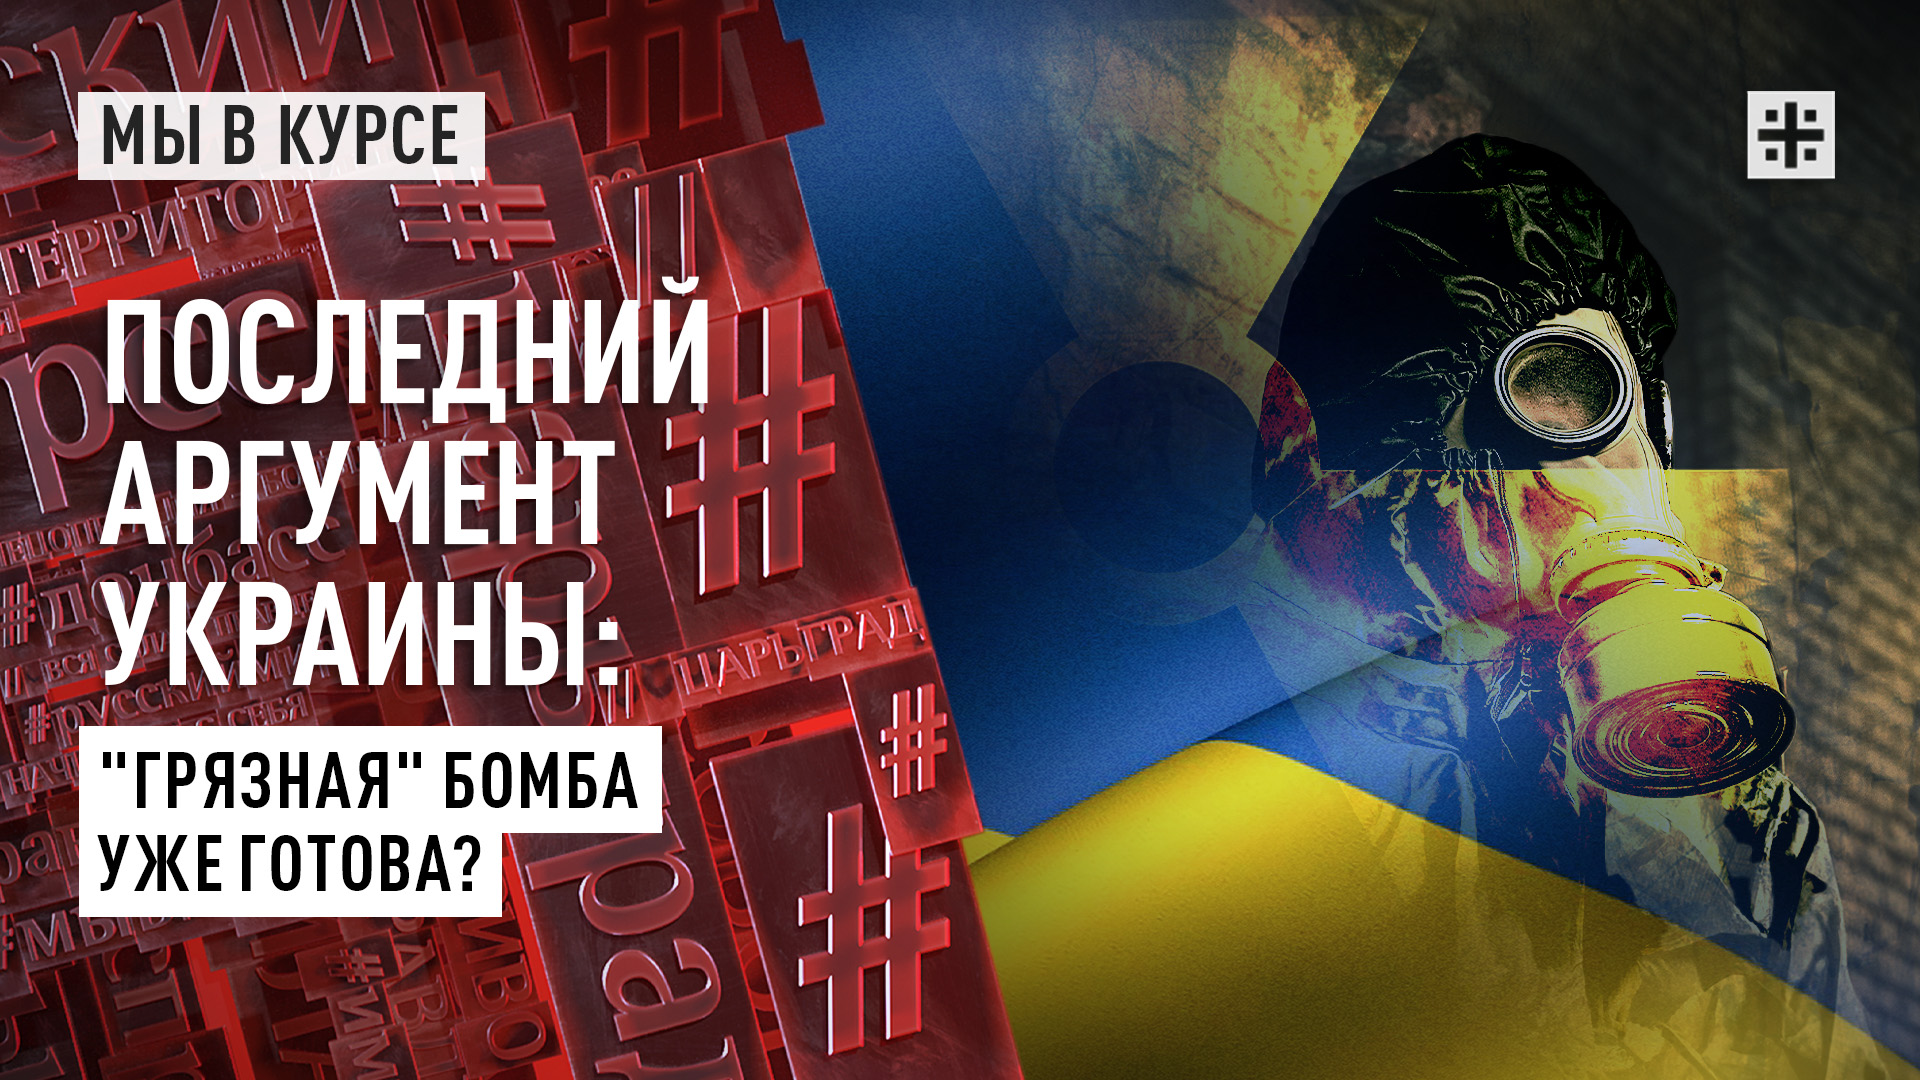 Последний аргумент Украины: "Грязная" бомба уже готова?